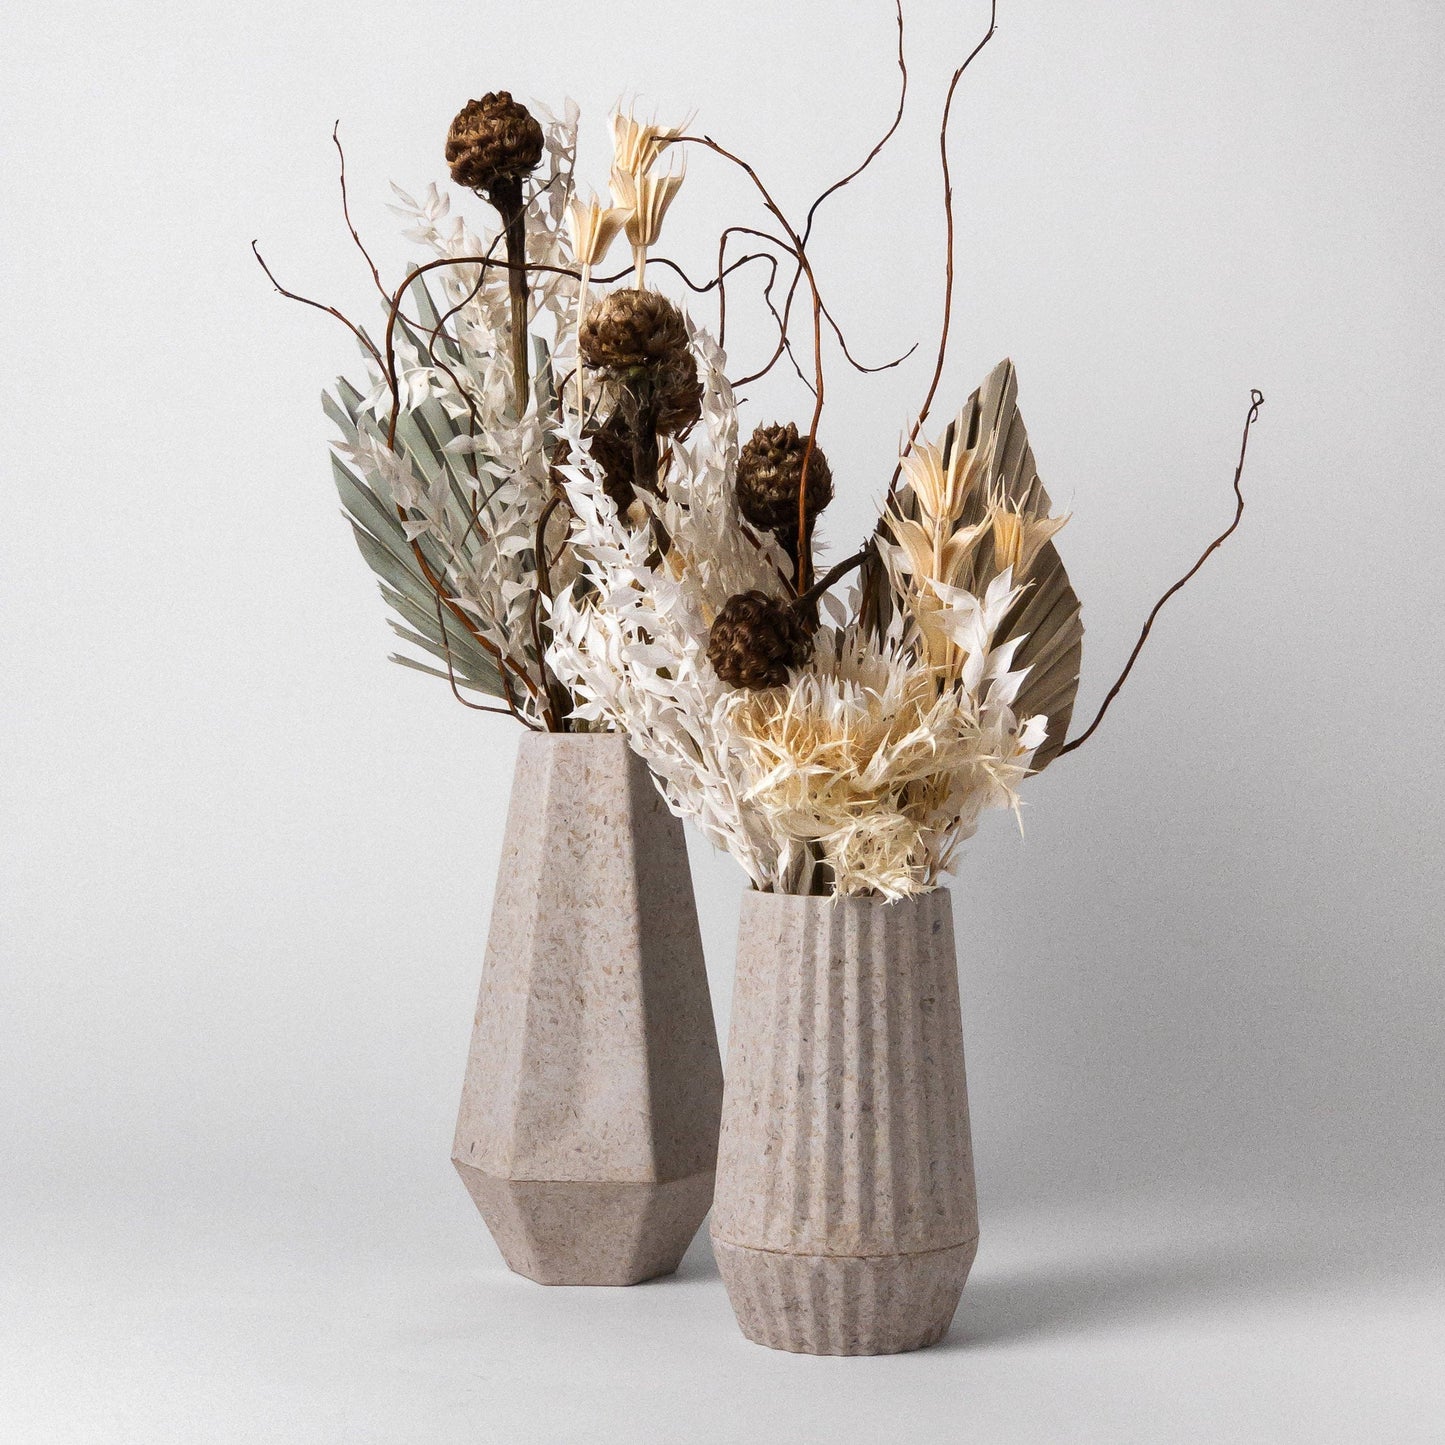 Kanso Designs Rice Husk Vase